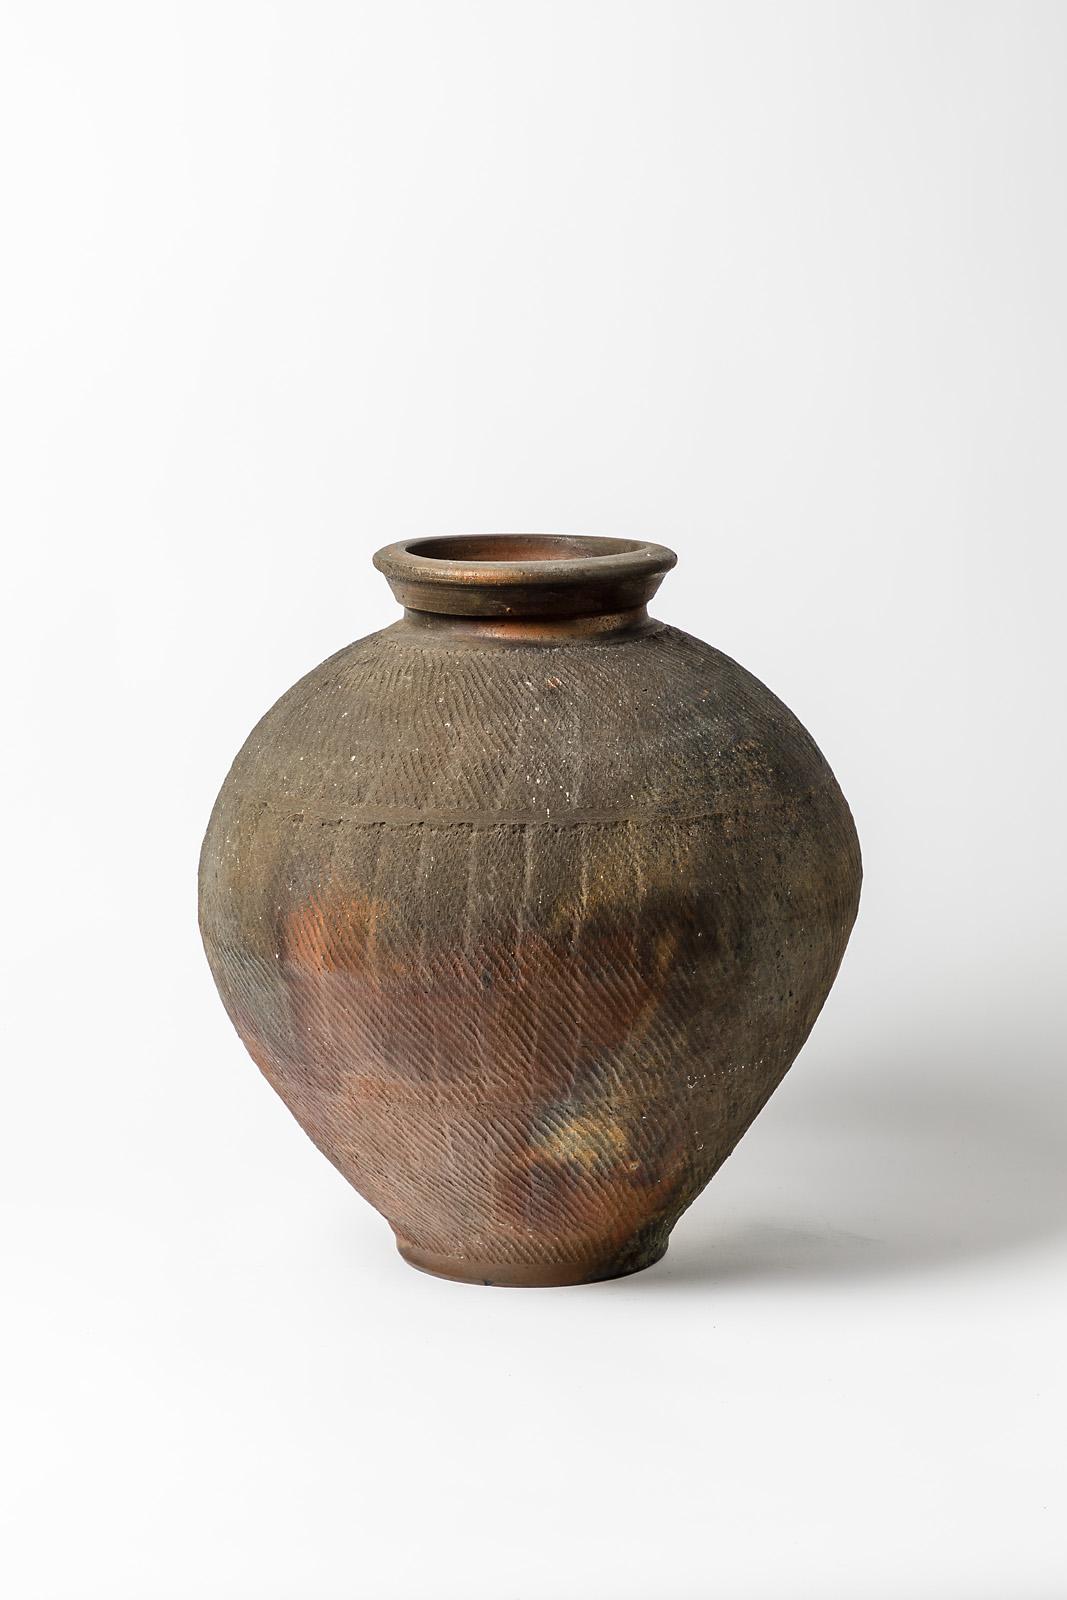 Steen Kepp - La Borne

Réalisé vers 1975-1980

Grand vase de sol en céramique de grès brun et noir.

Signé sous la base

Condition originale parfaite

Mesures : Hauteur 40 cm
Grand 33 cm.